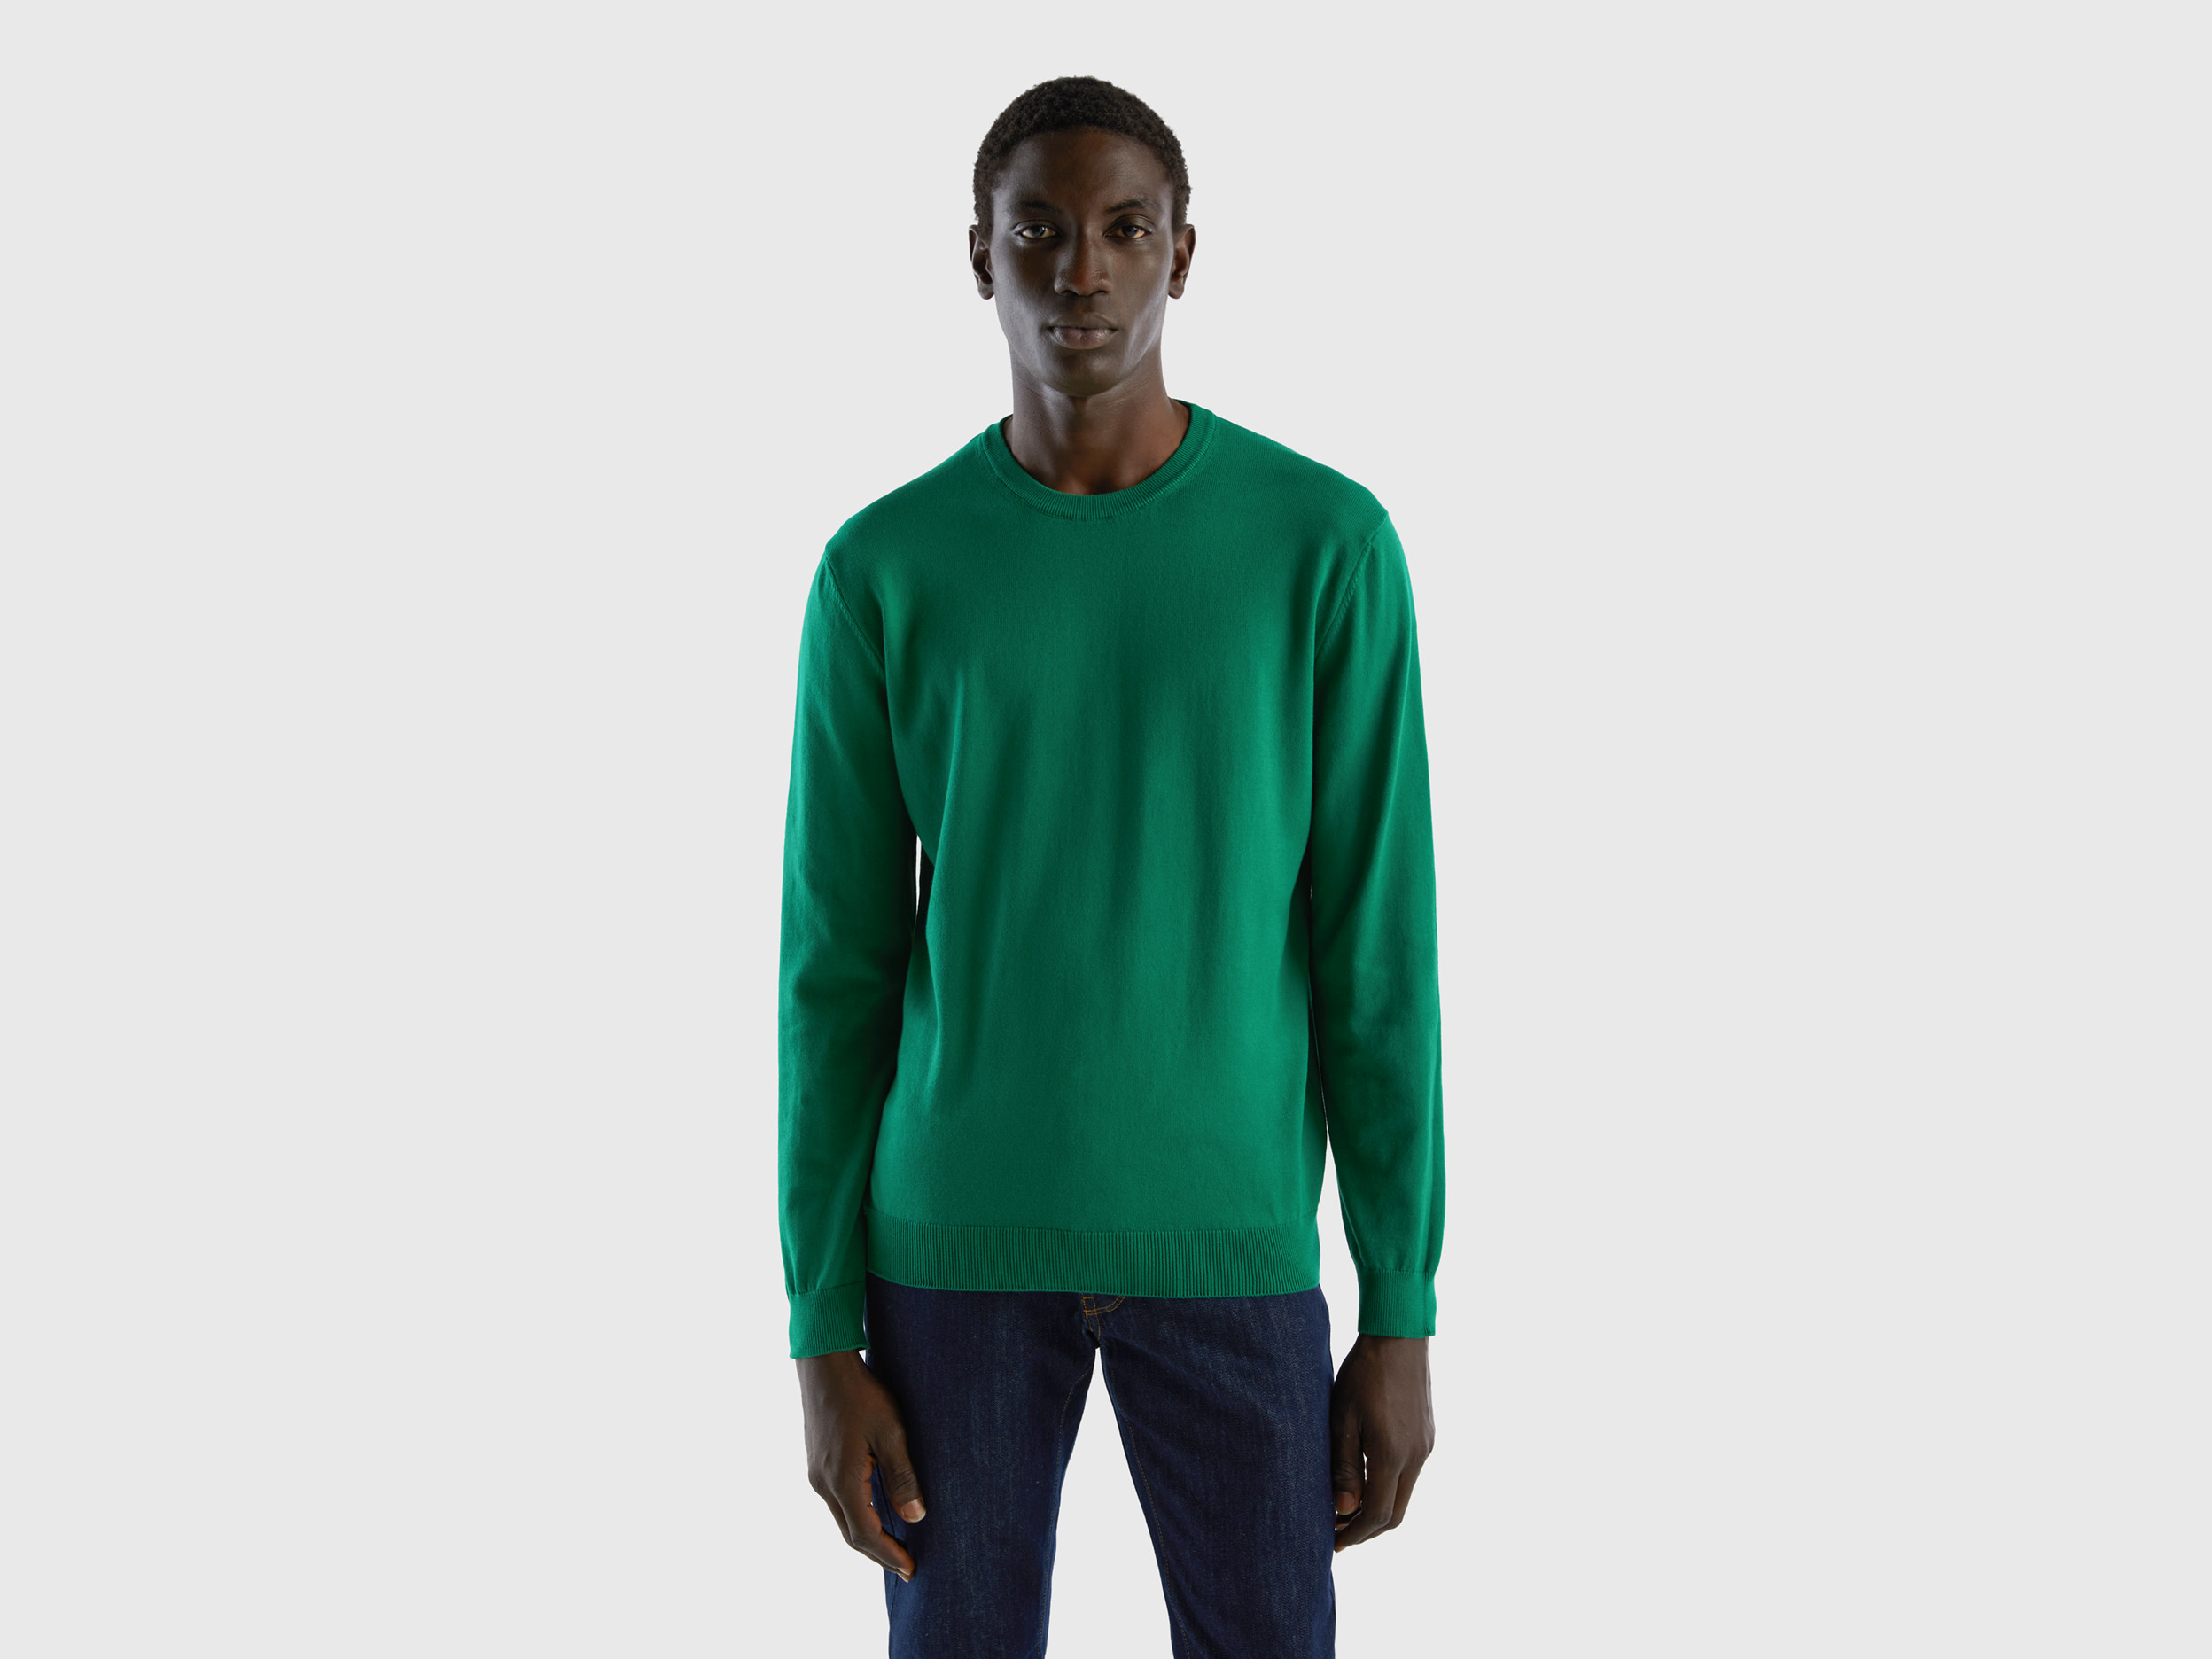 Benetton, Crew Neck Sweater In 100% Cotton, size XXL, Dark Green, Men